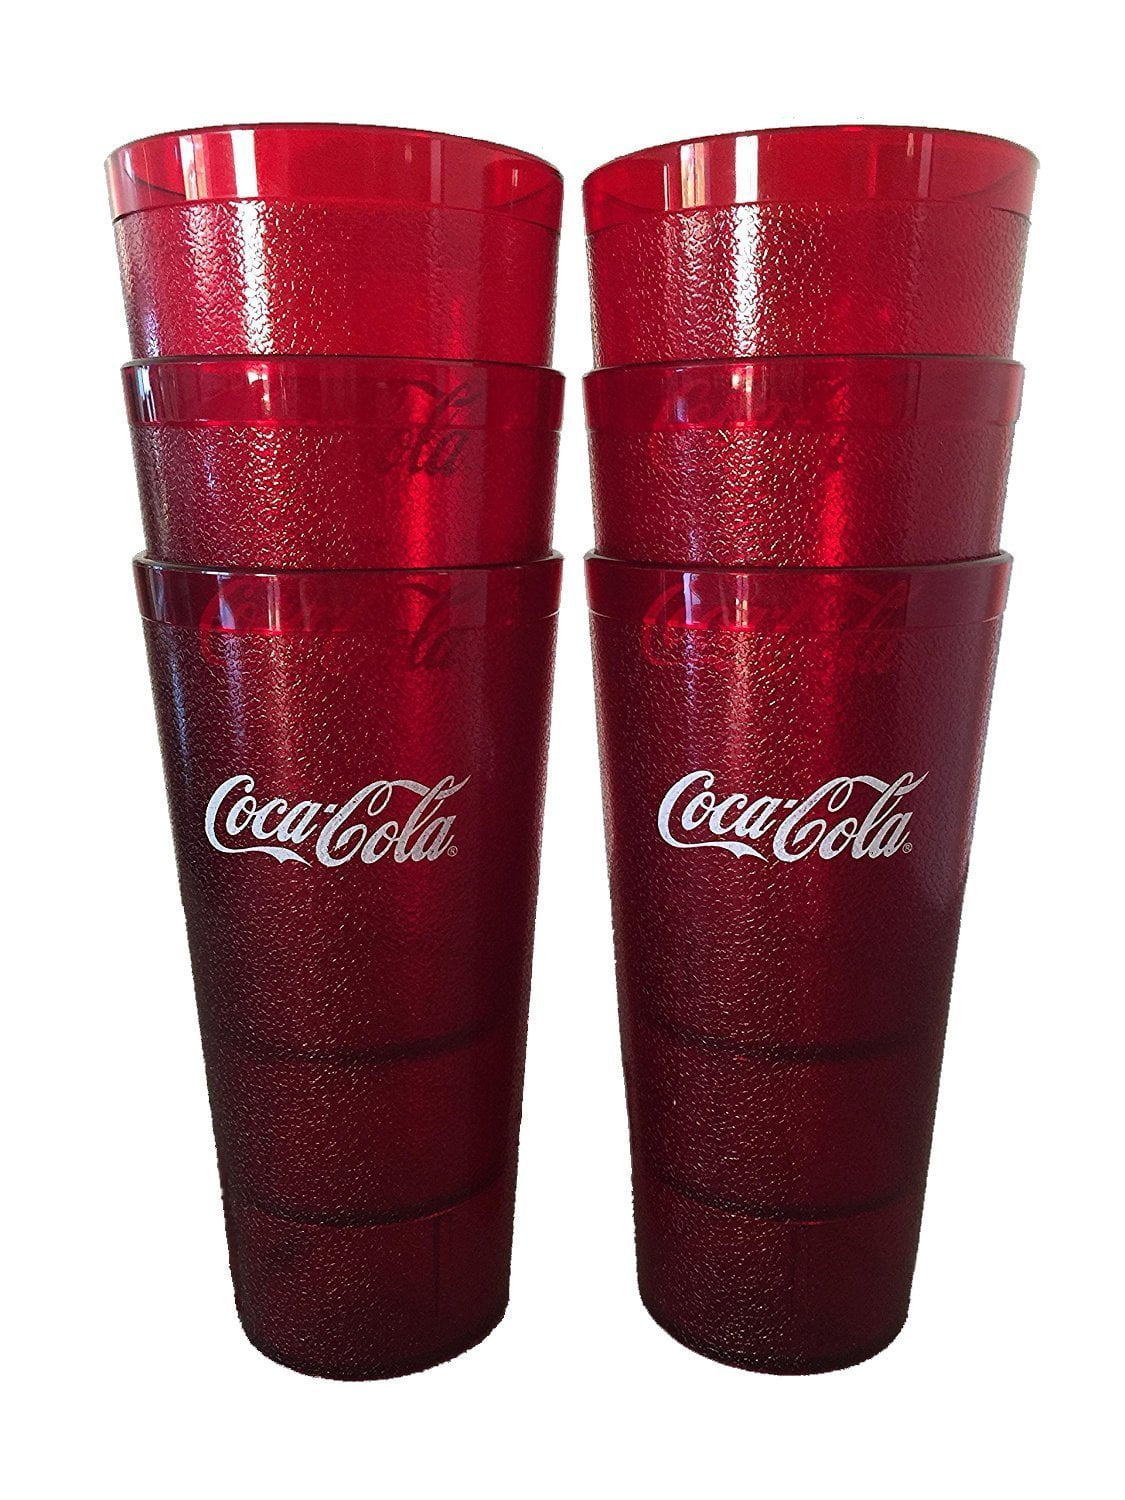 Pair of New Coca Cola Tumblers 20 Oz Plastic Glasses 